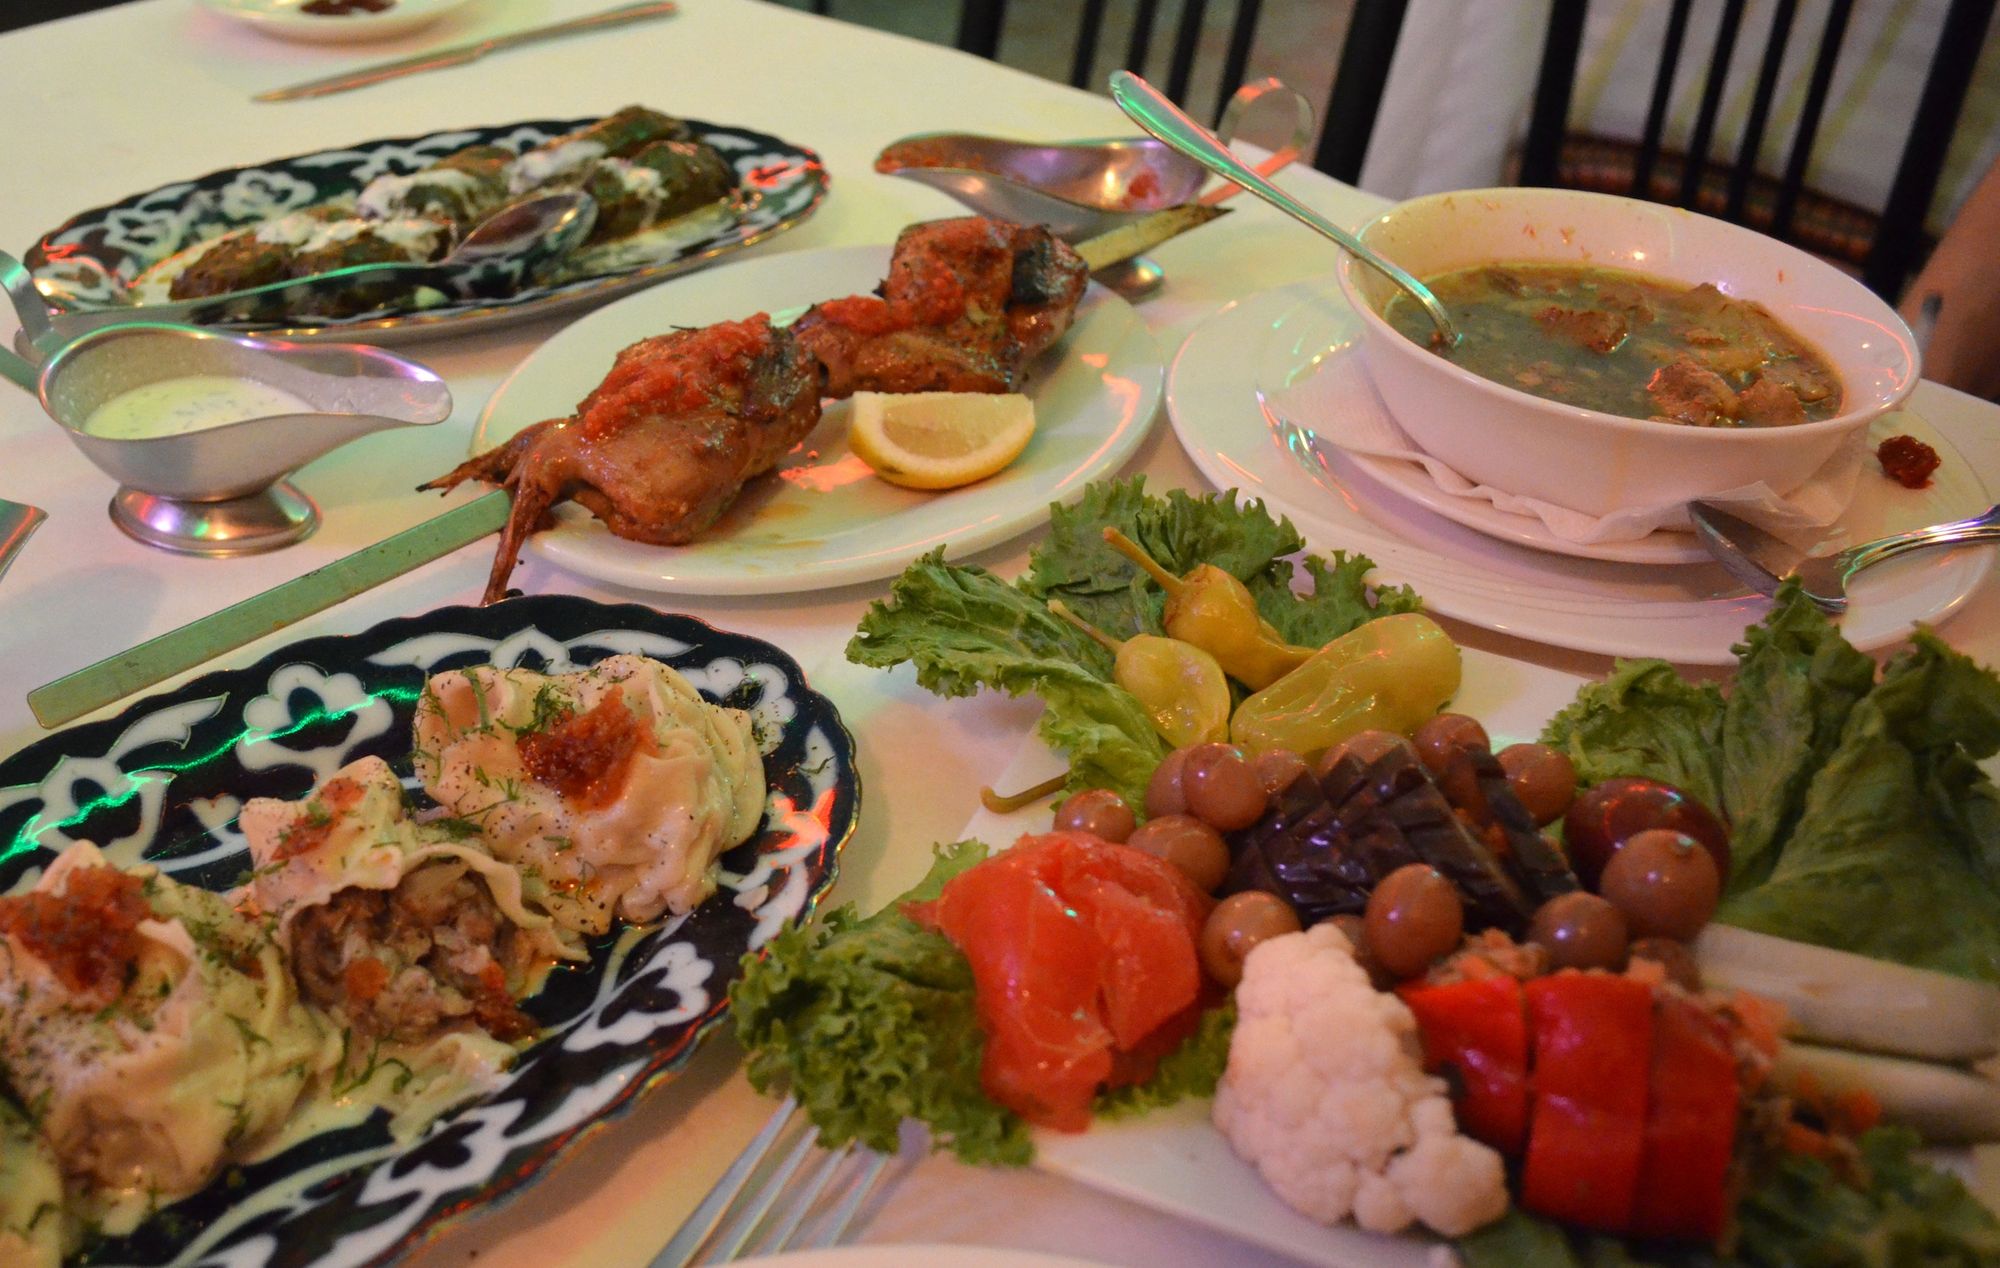 Our dinner table at Azerbaijan House. 